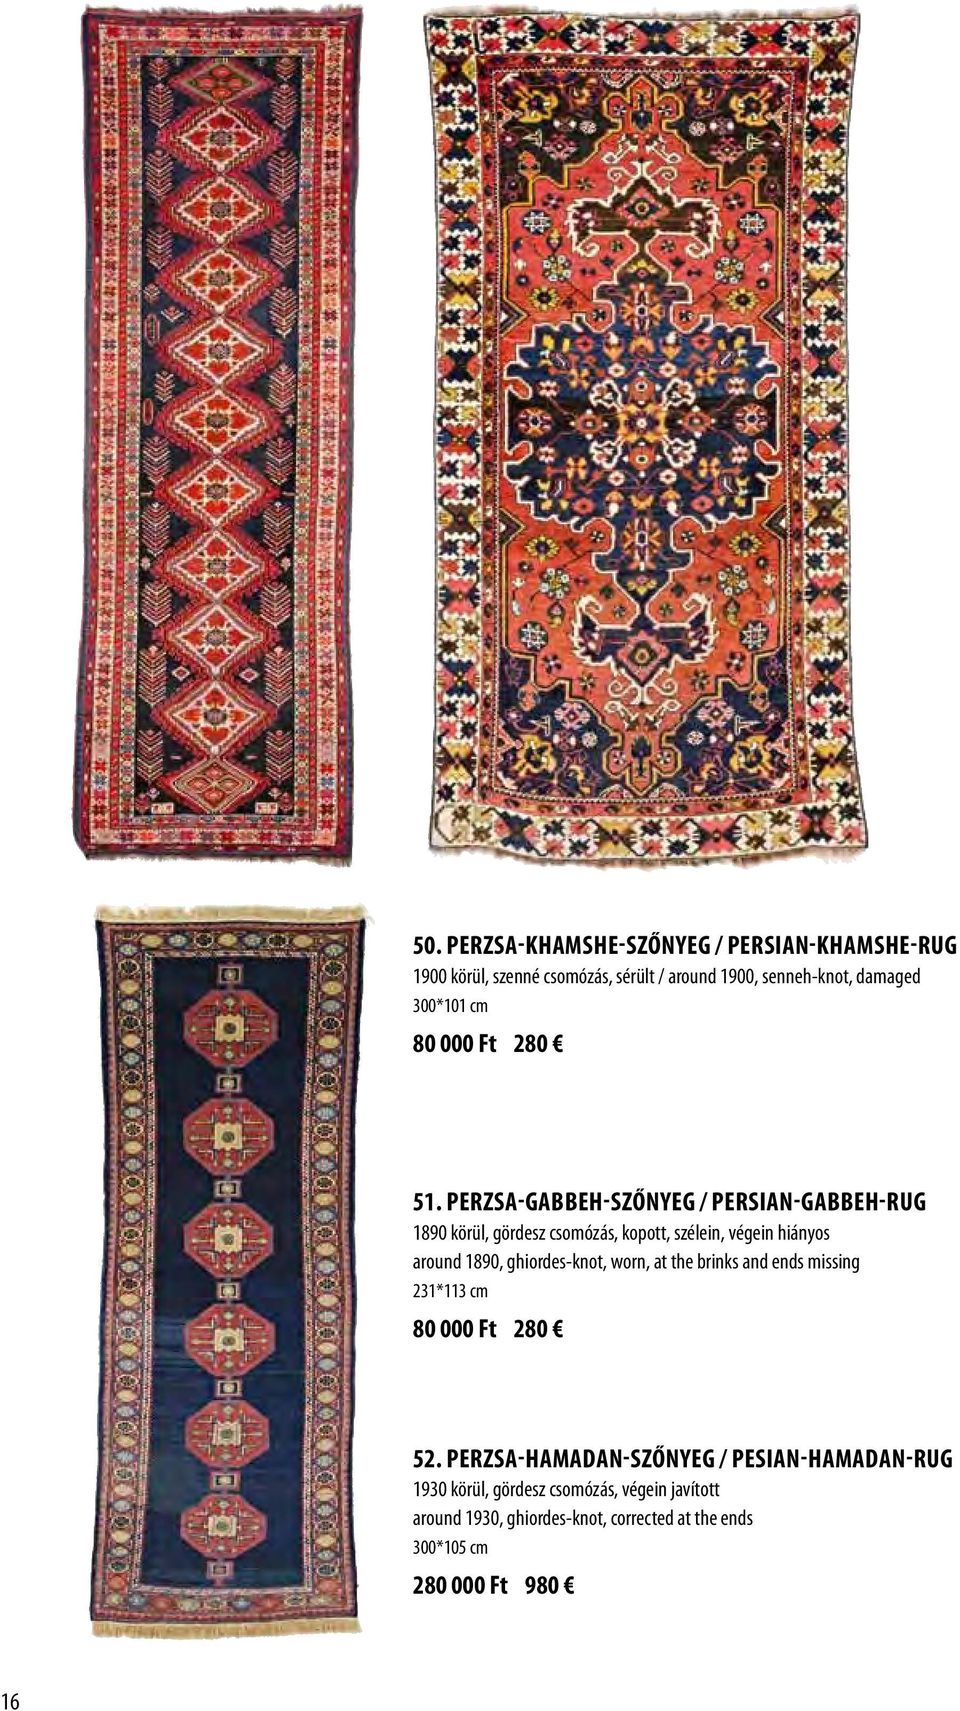 Perzsa-Gabbeh-szőnyeg / Persian-Gabbeh-rug 1890 körül, gördesz csomózás, kopott, szélein, végein hiányos around 1890,